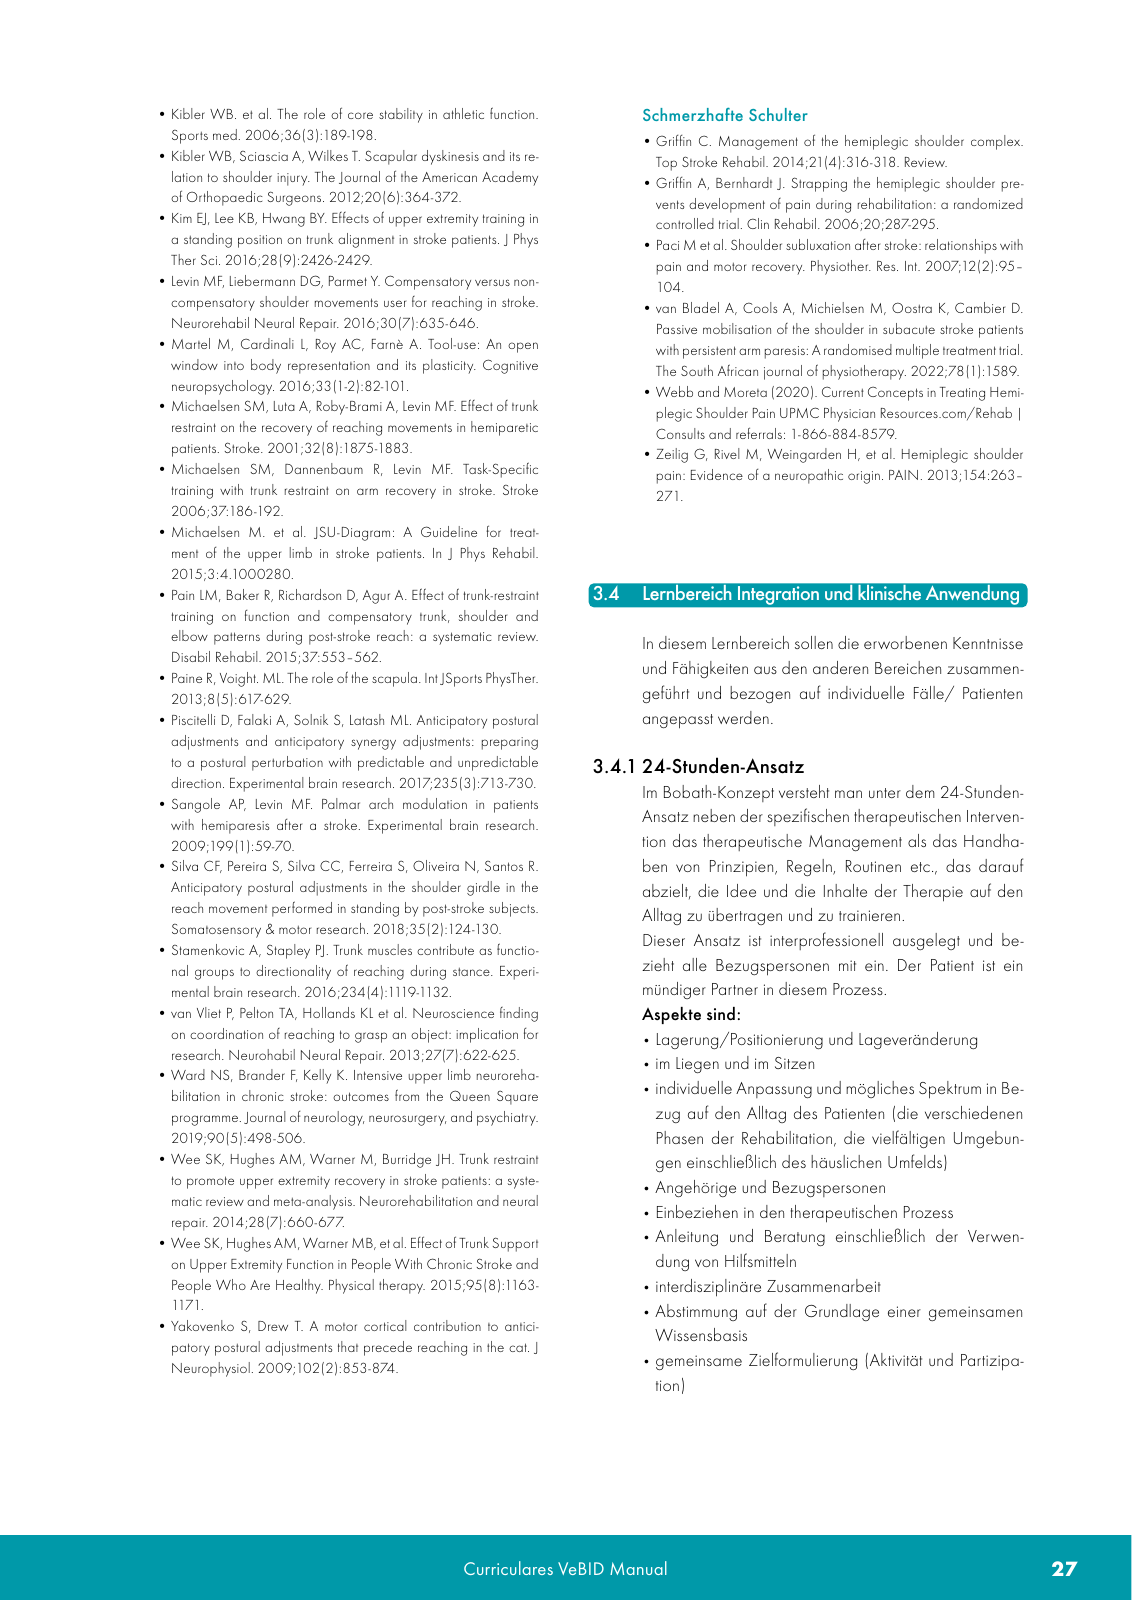 Vorschau VeBID Curriculum 2022 Seite 27